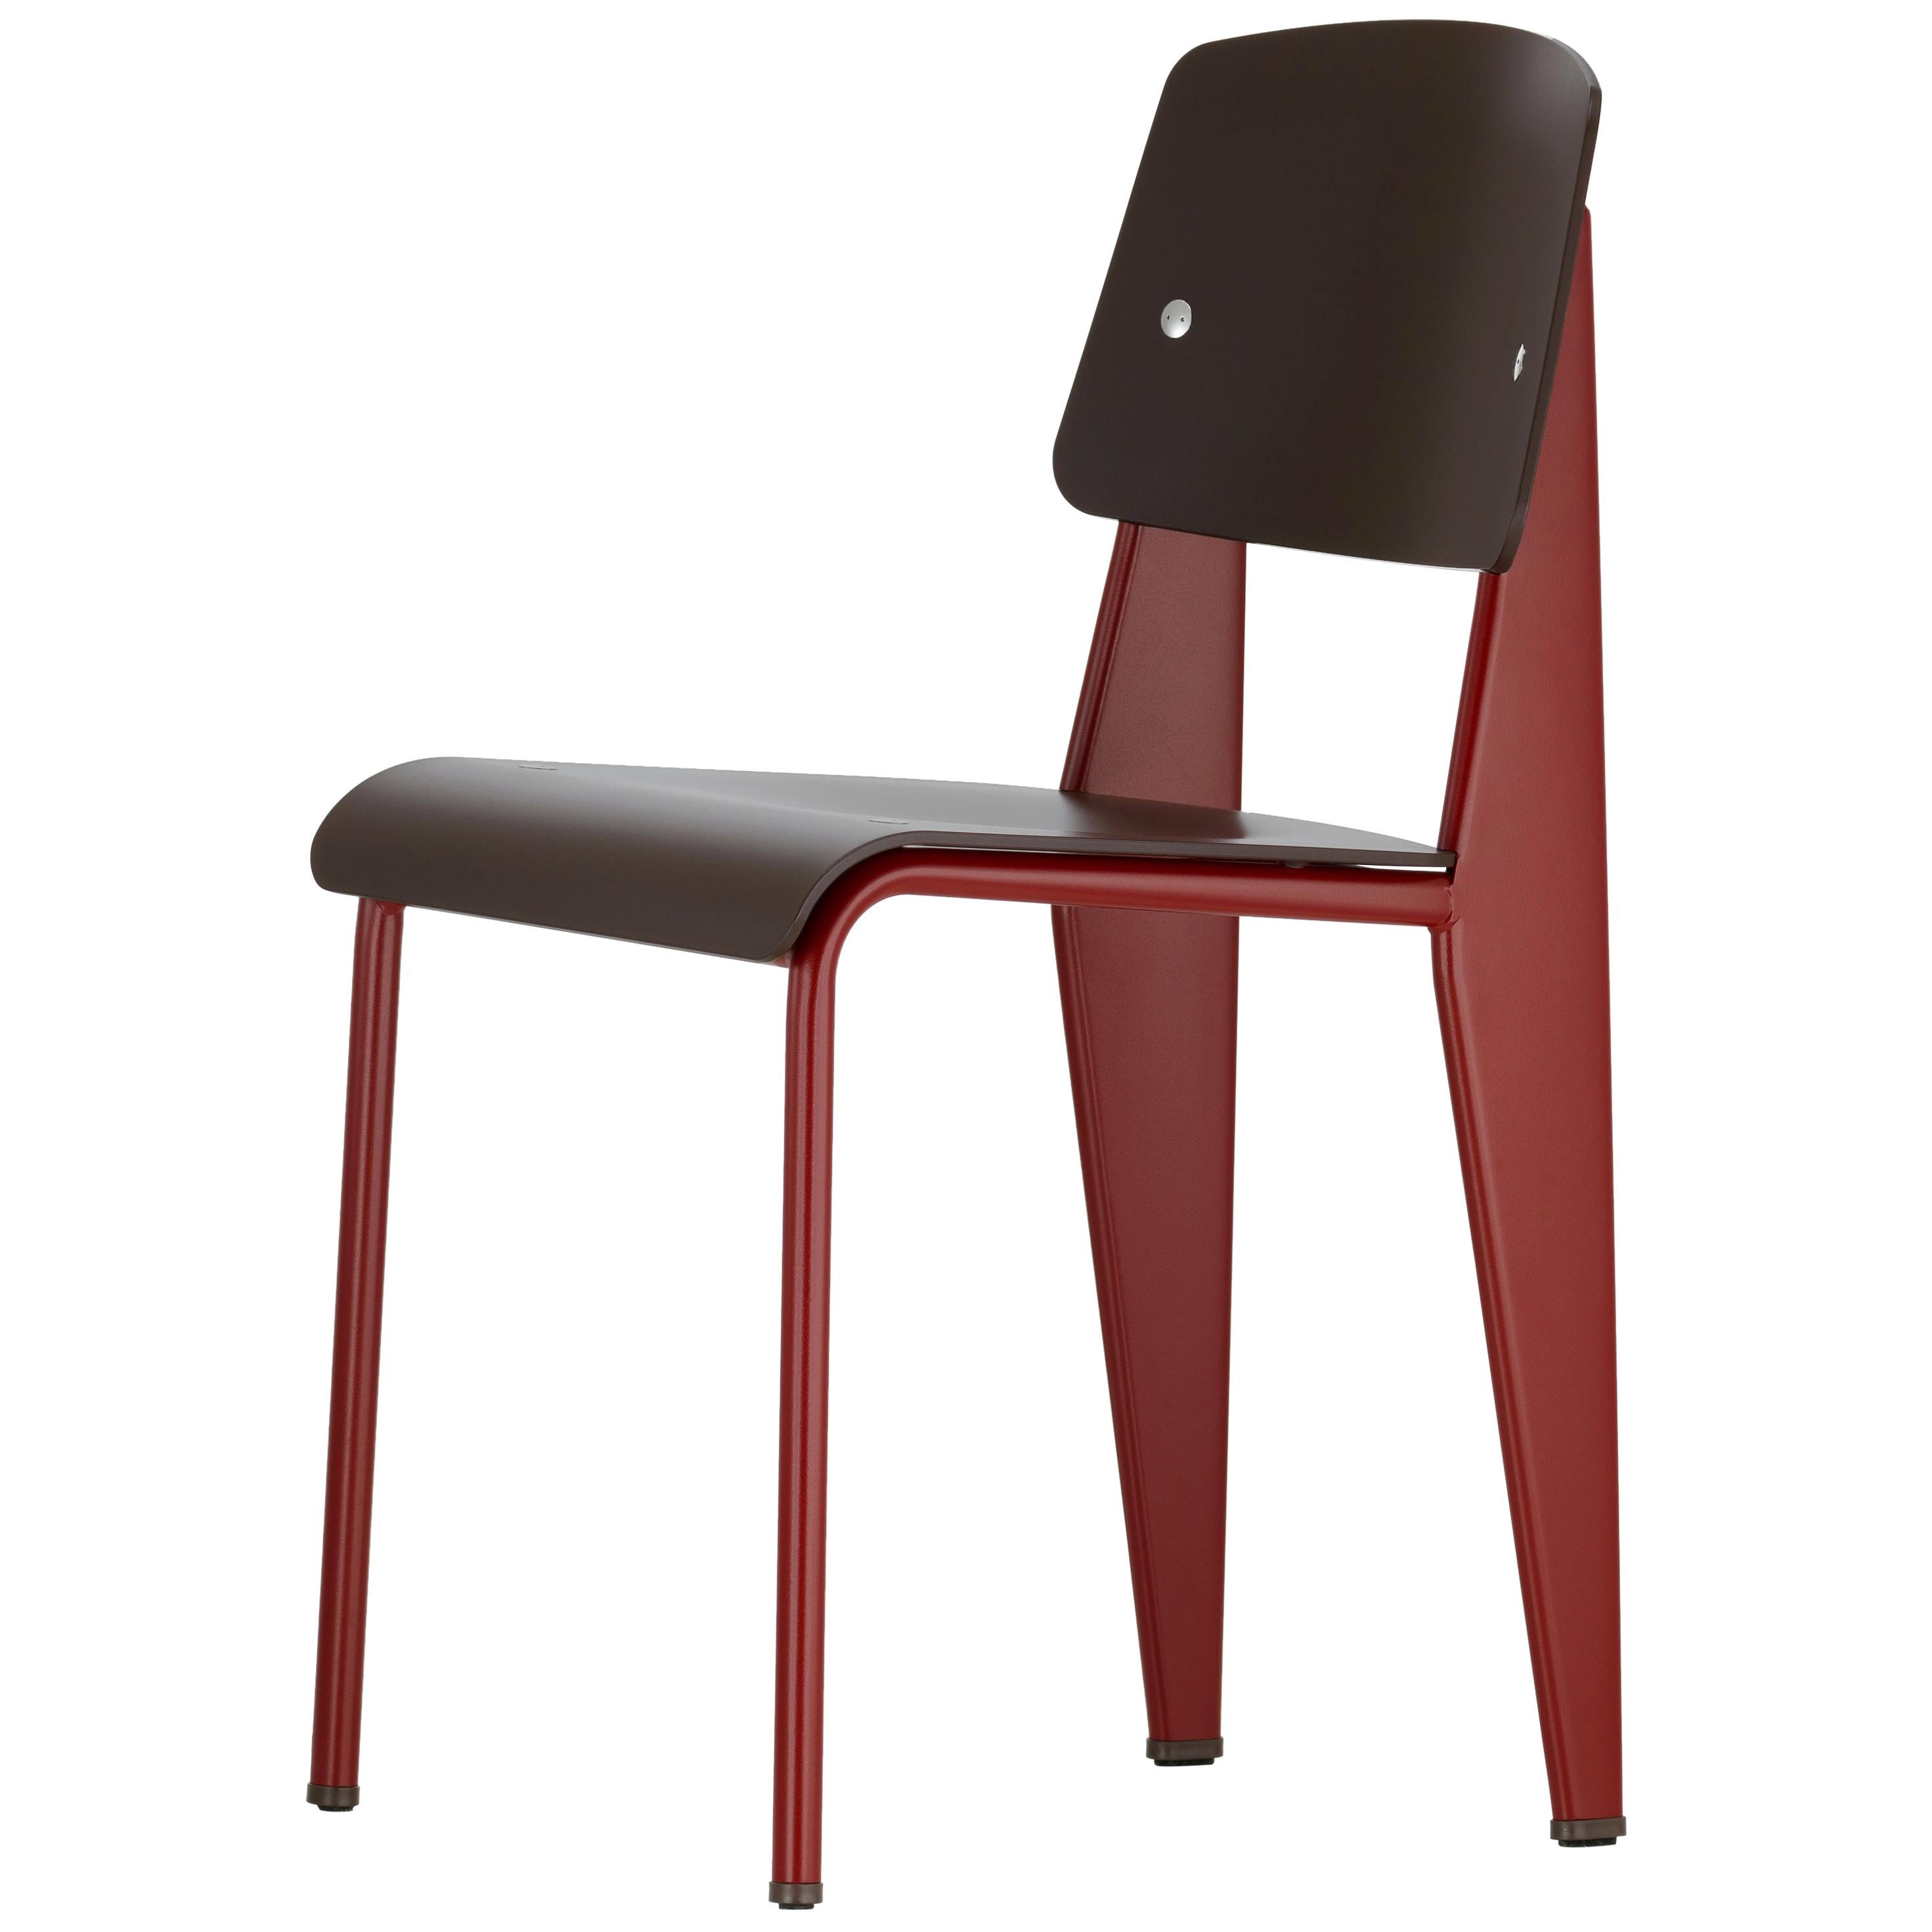 6 Stühle Jean Prouvé Standard SP in Teak Brown und Rot für Vitra (Pulverbeschichtet)